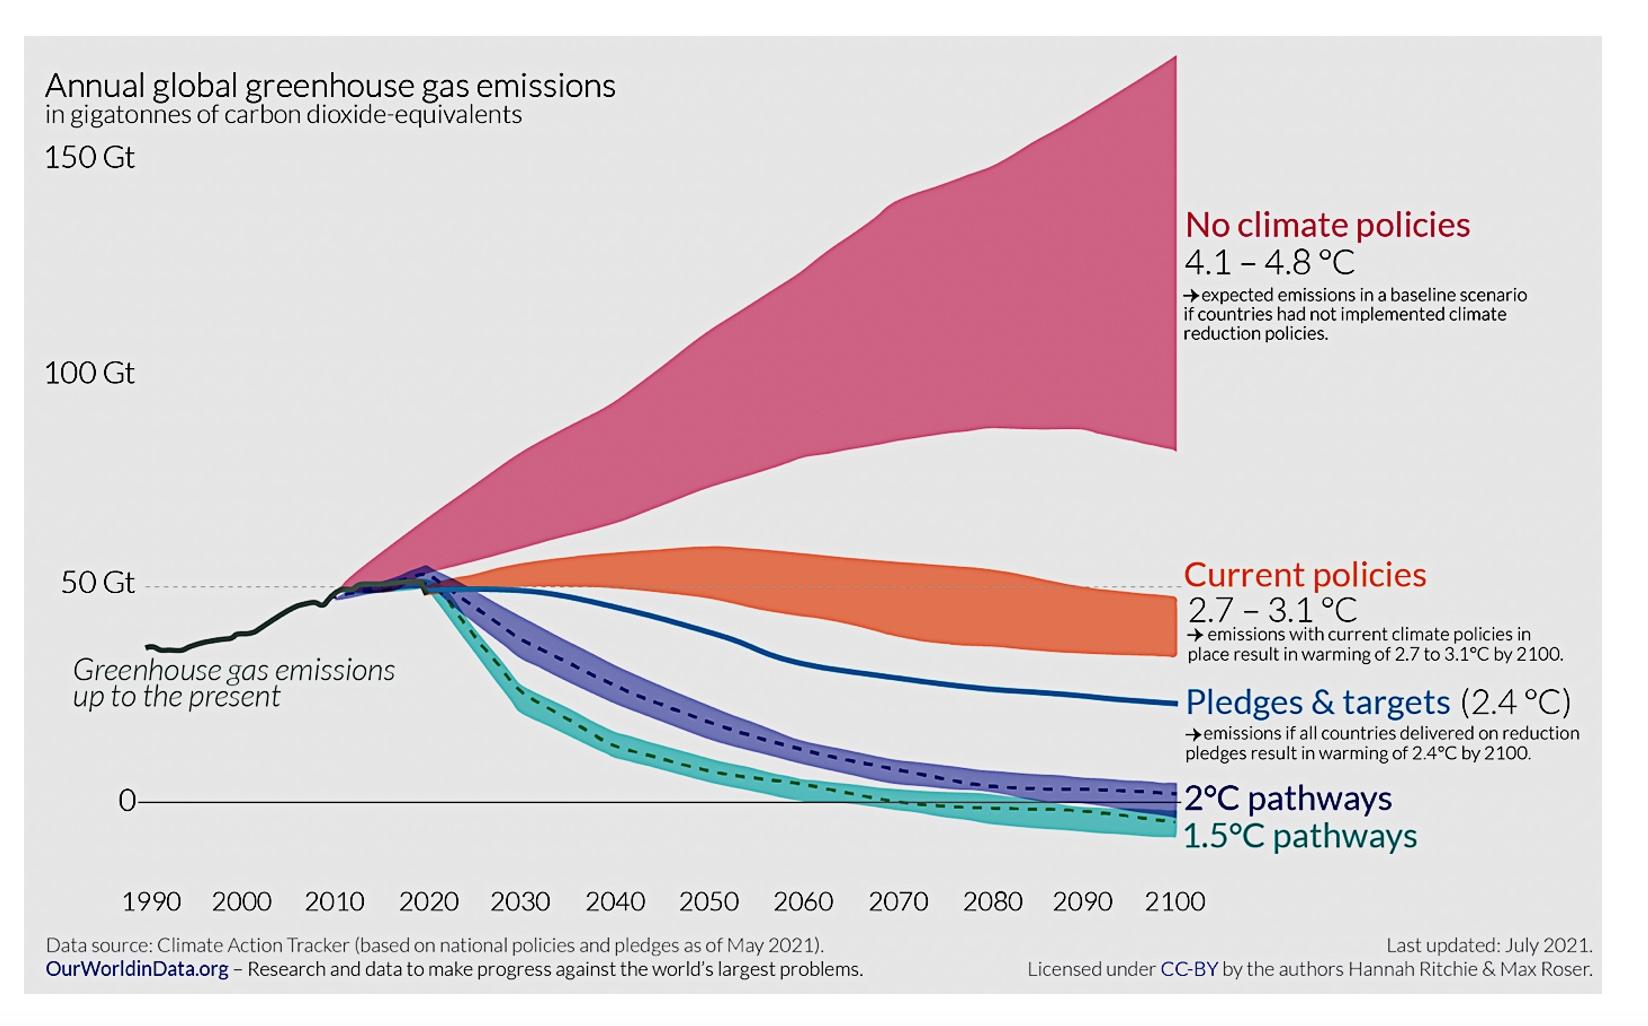 график, иллюстрирующий ежегодные глобальные выбросы парниковых газов и изменения, необходимые для предотвращения изменения климата